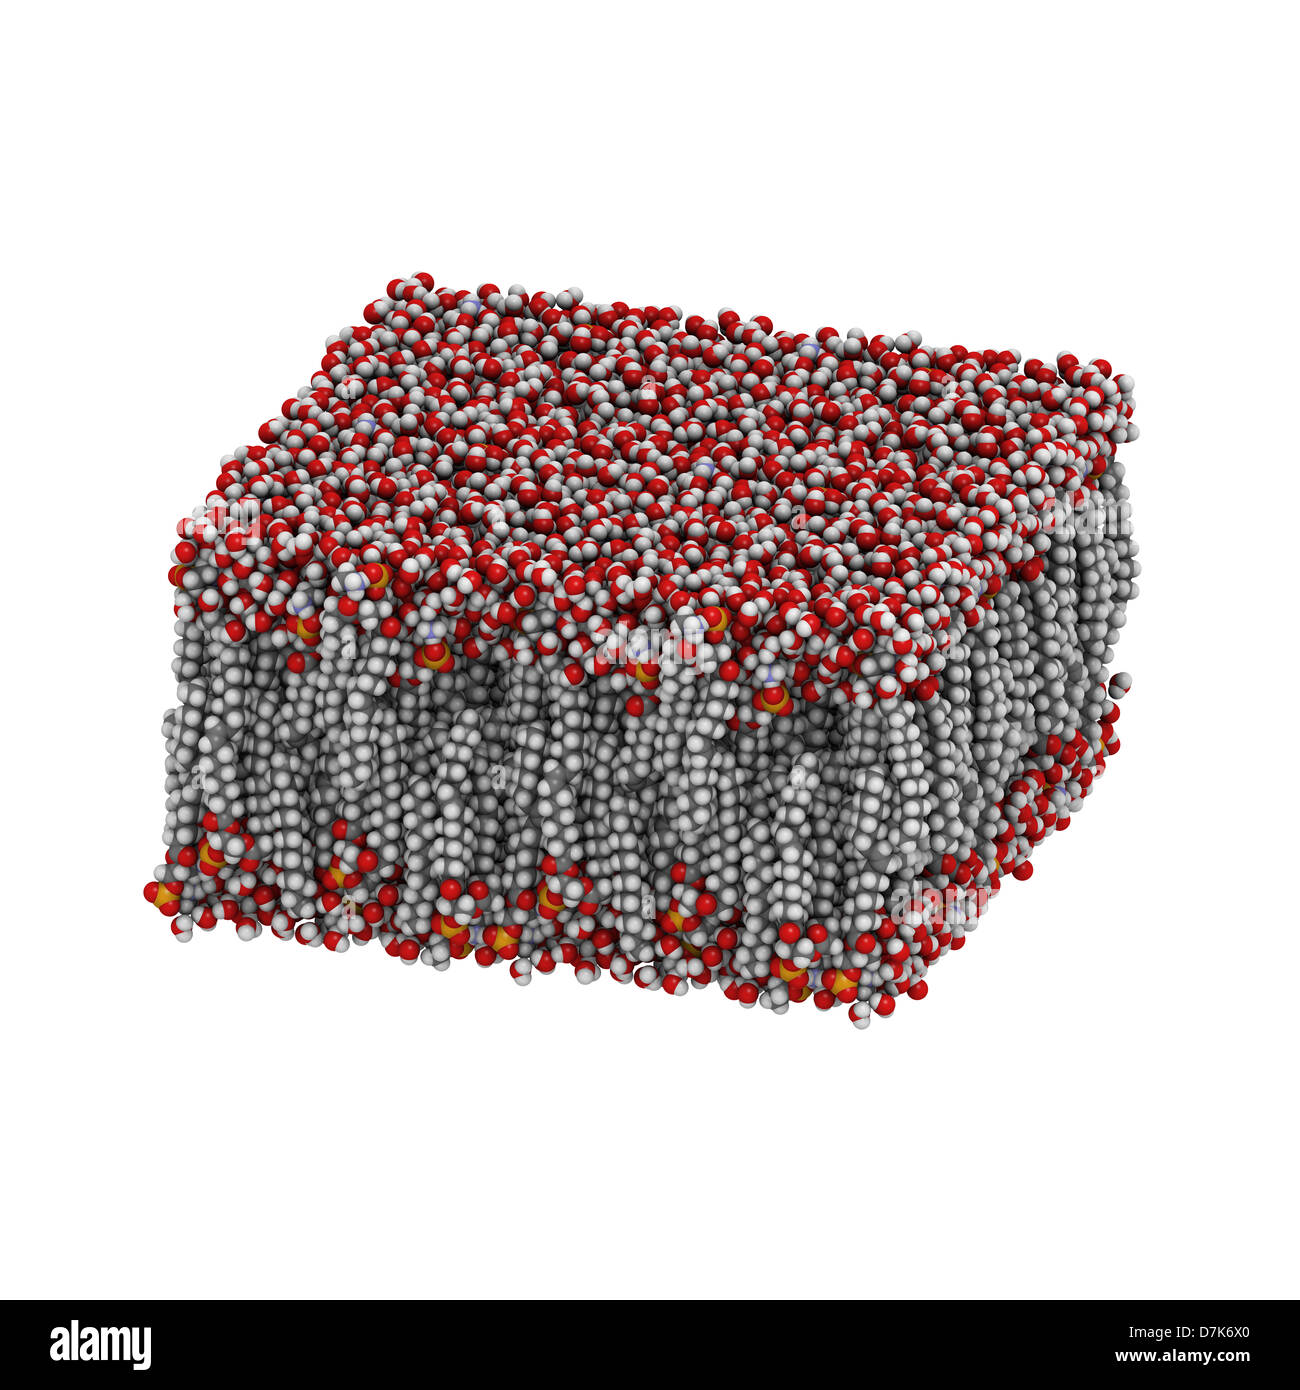 Palmitoyloleoylphosphatidyllethanolamine (PAPE) membrane bicouche lipidique dans l'eau, le modèle moléculaire. Banque D'Images